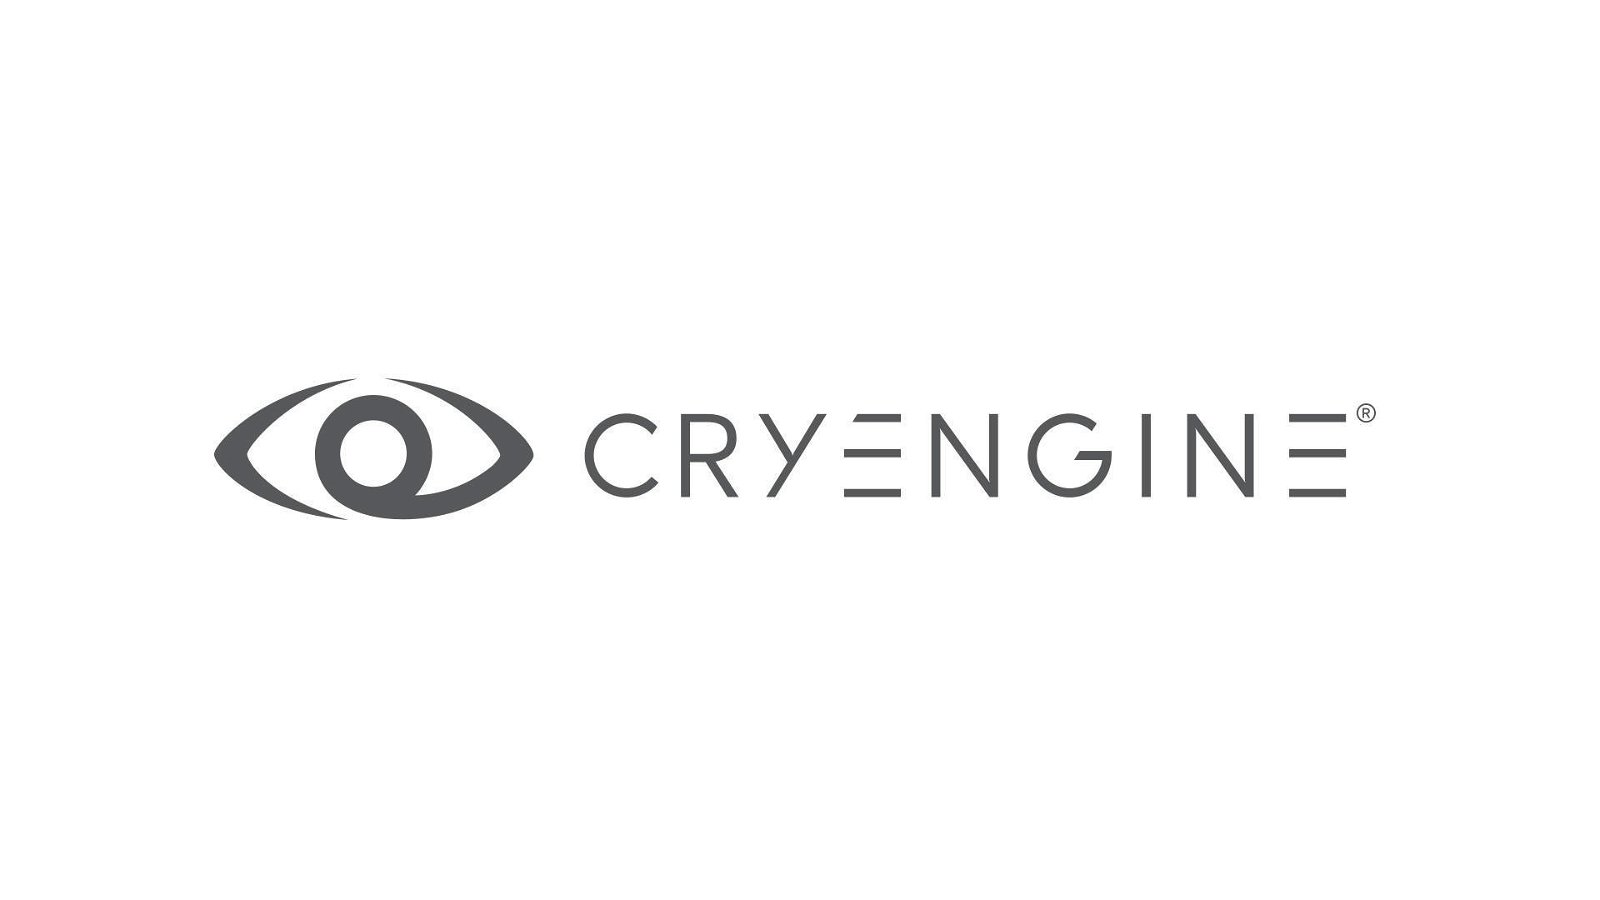 Immagine di PS5: la super-grafica del CryEngine sarà su next gen